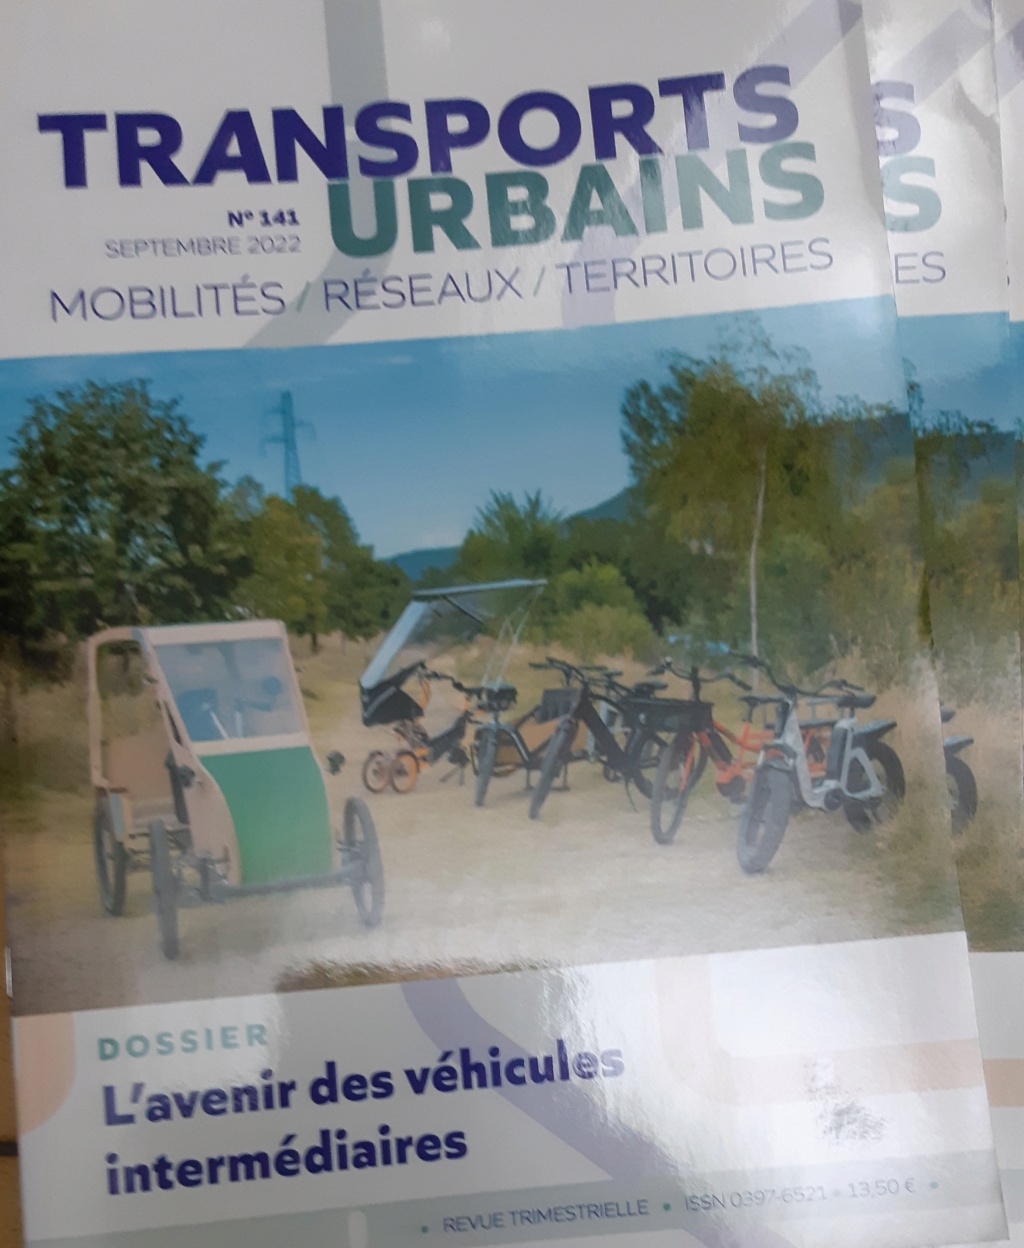 Engin electric de l'IUT de l' Aisne: 2021...reflexions sur la mobilité - Page 24 20221017